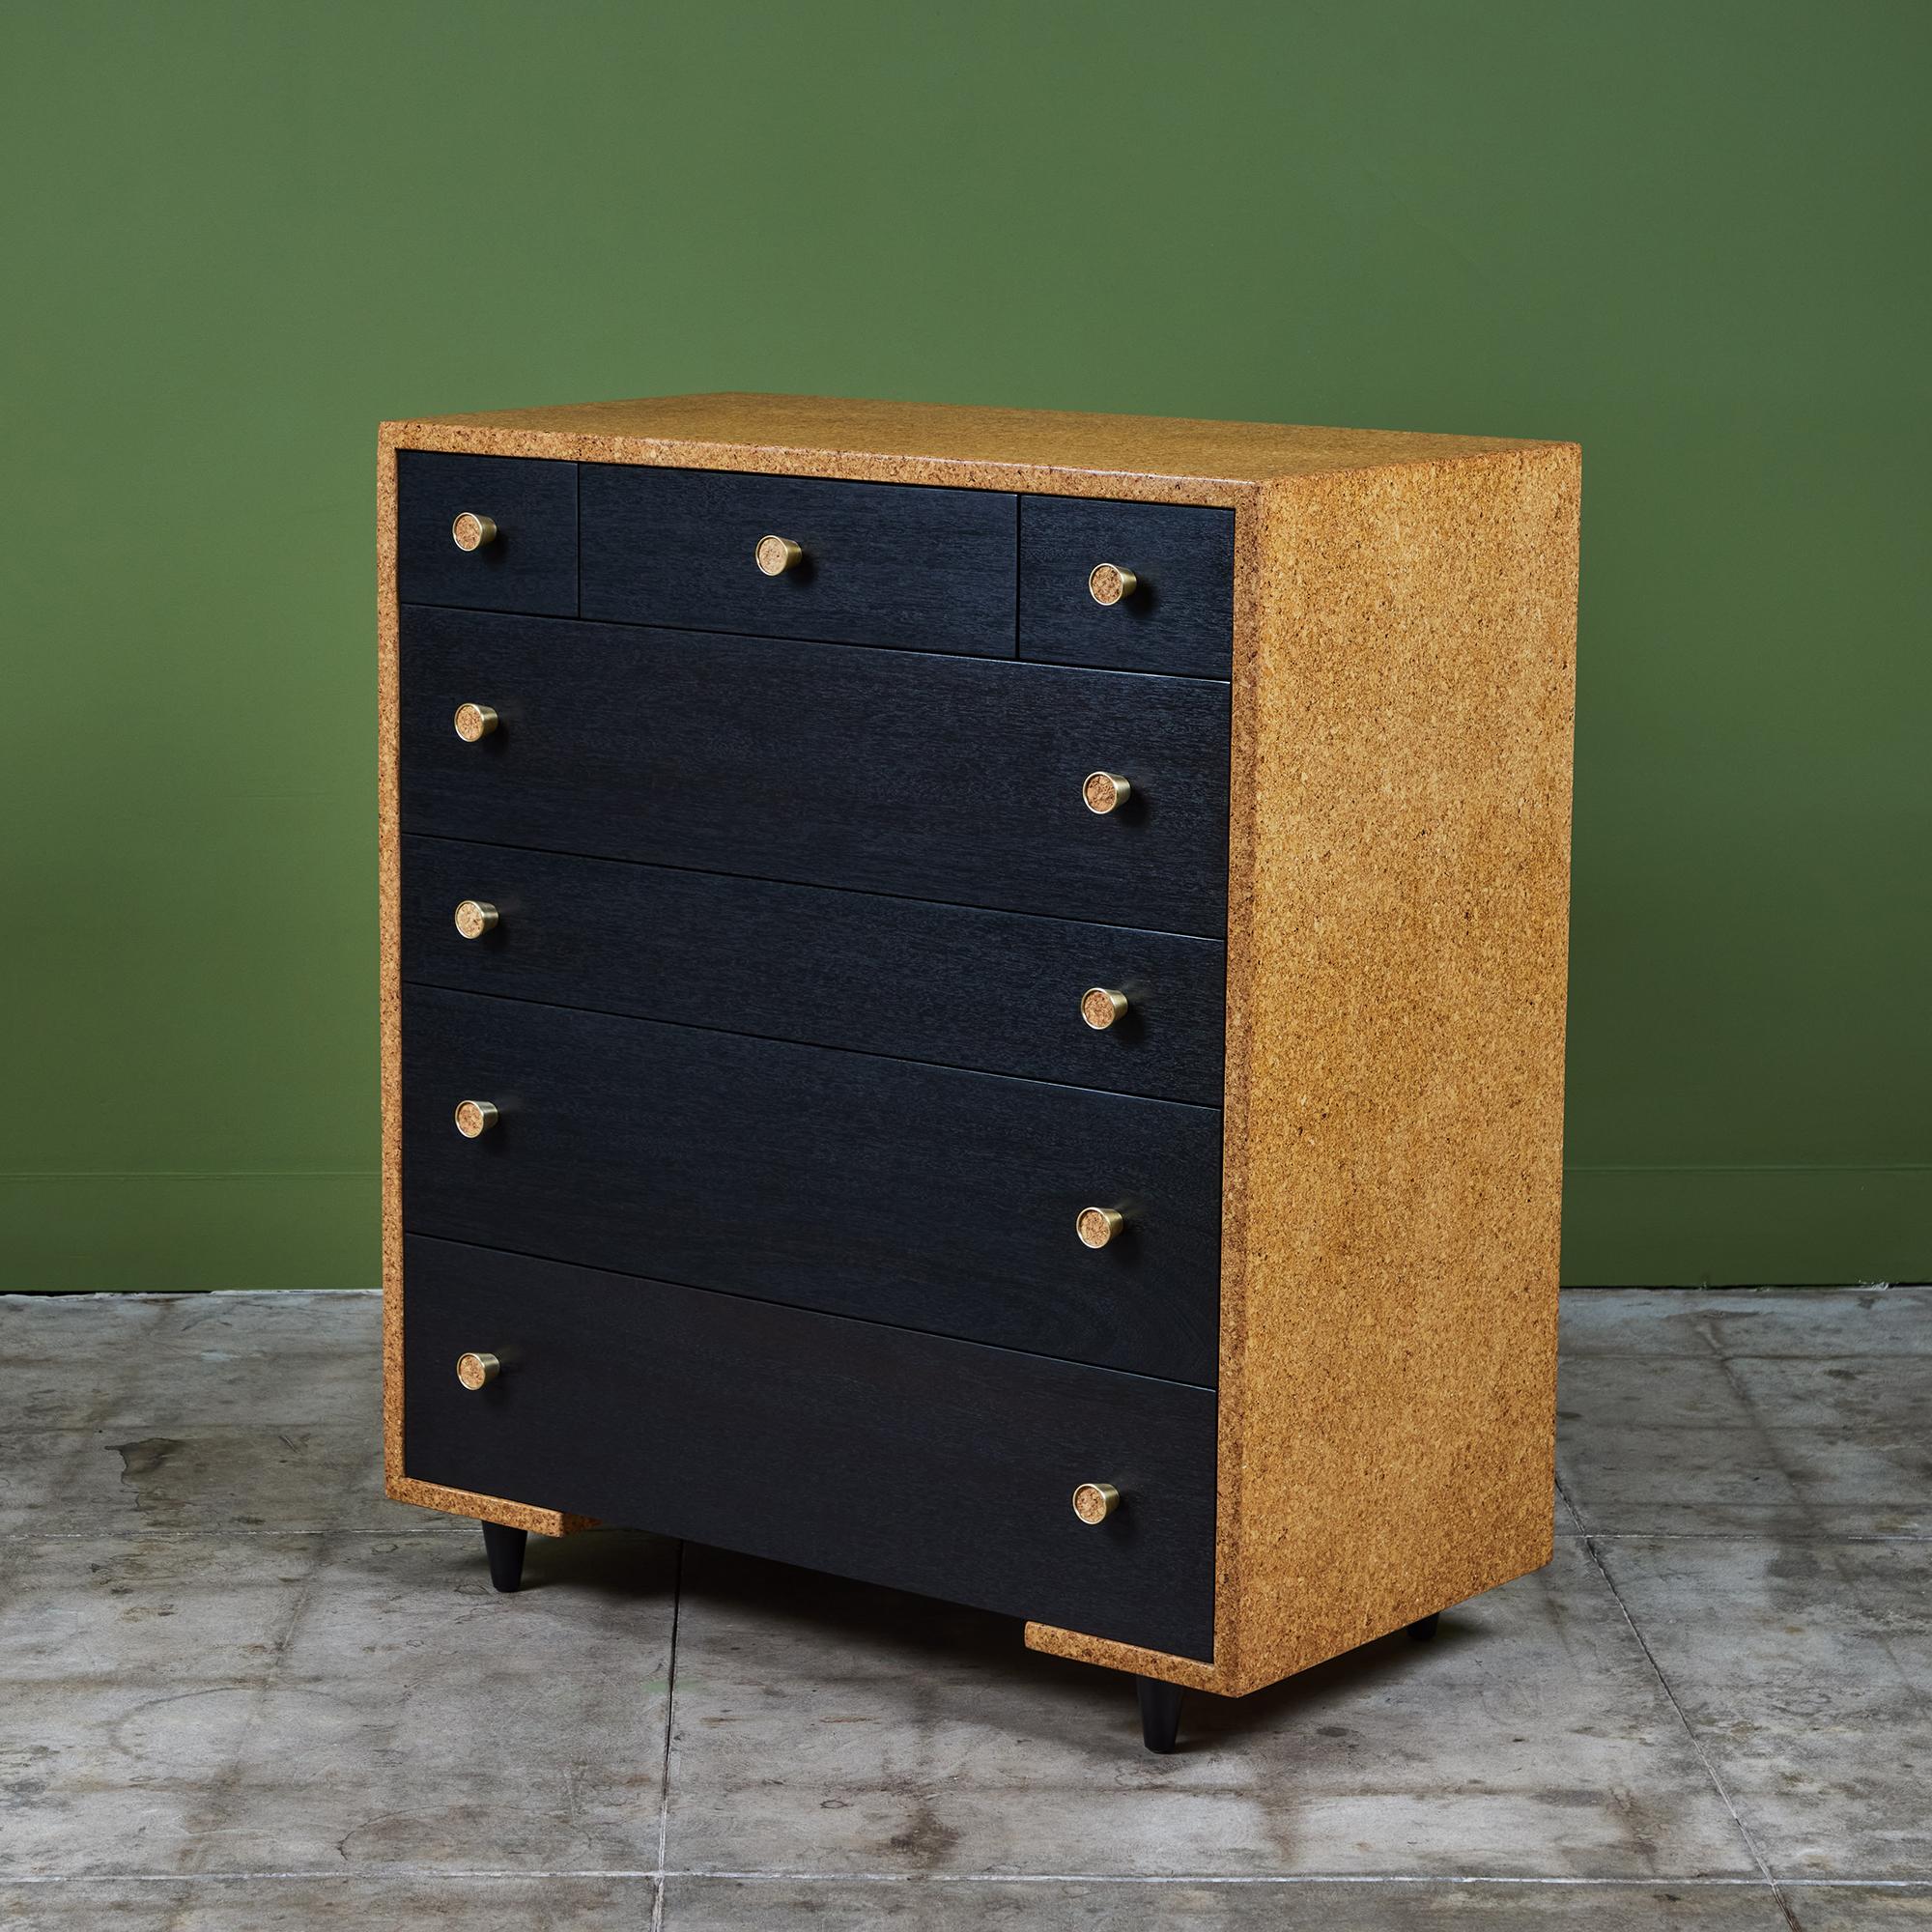 Paul Frankls Korkmöbel gehören zu seinen nachhaltigsten Beiträgen zum amerikanischen Modernismus und sind bis heute sehr begehrt. Dieses Beispiel, eine Korkplatte mit Wasserfallkante, die für Johnson Furniture Co. entworfen und hergestellt wurde,